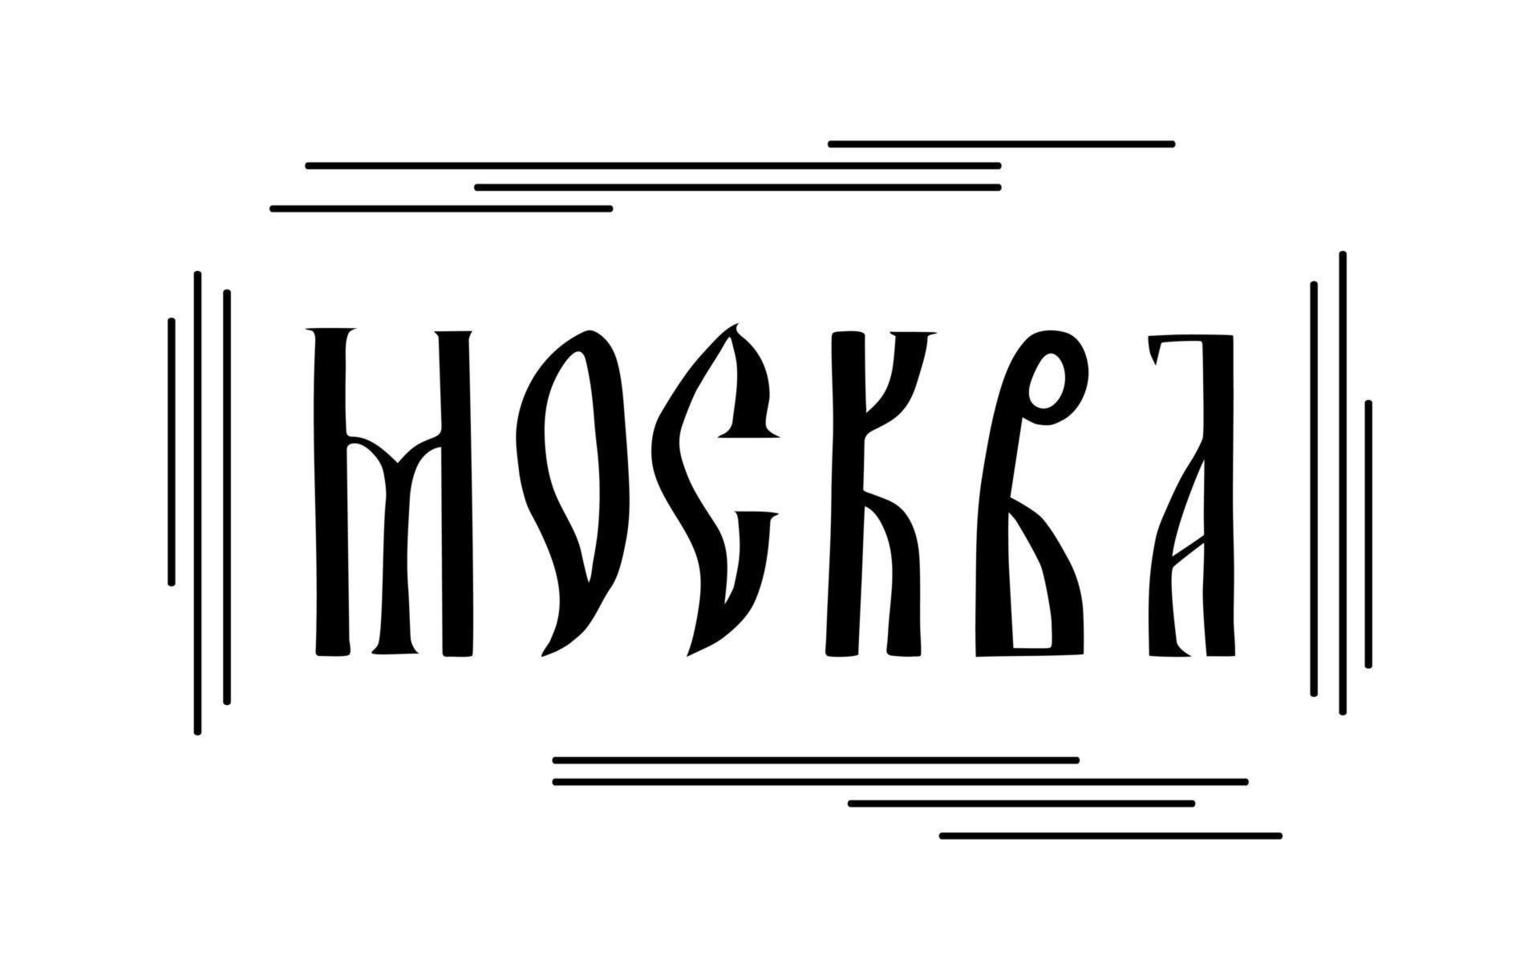 a inscrição em russo. o nome da cidade de moscou. roteiro manuscrito estilizado em antigas letras eslavas vetor